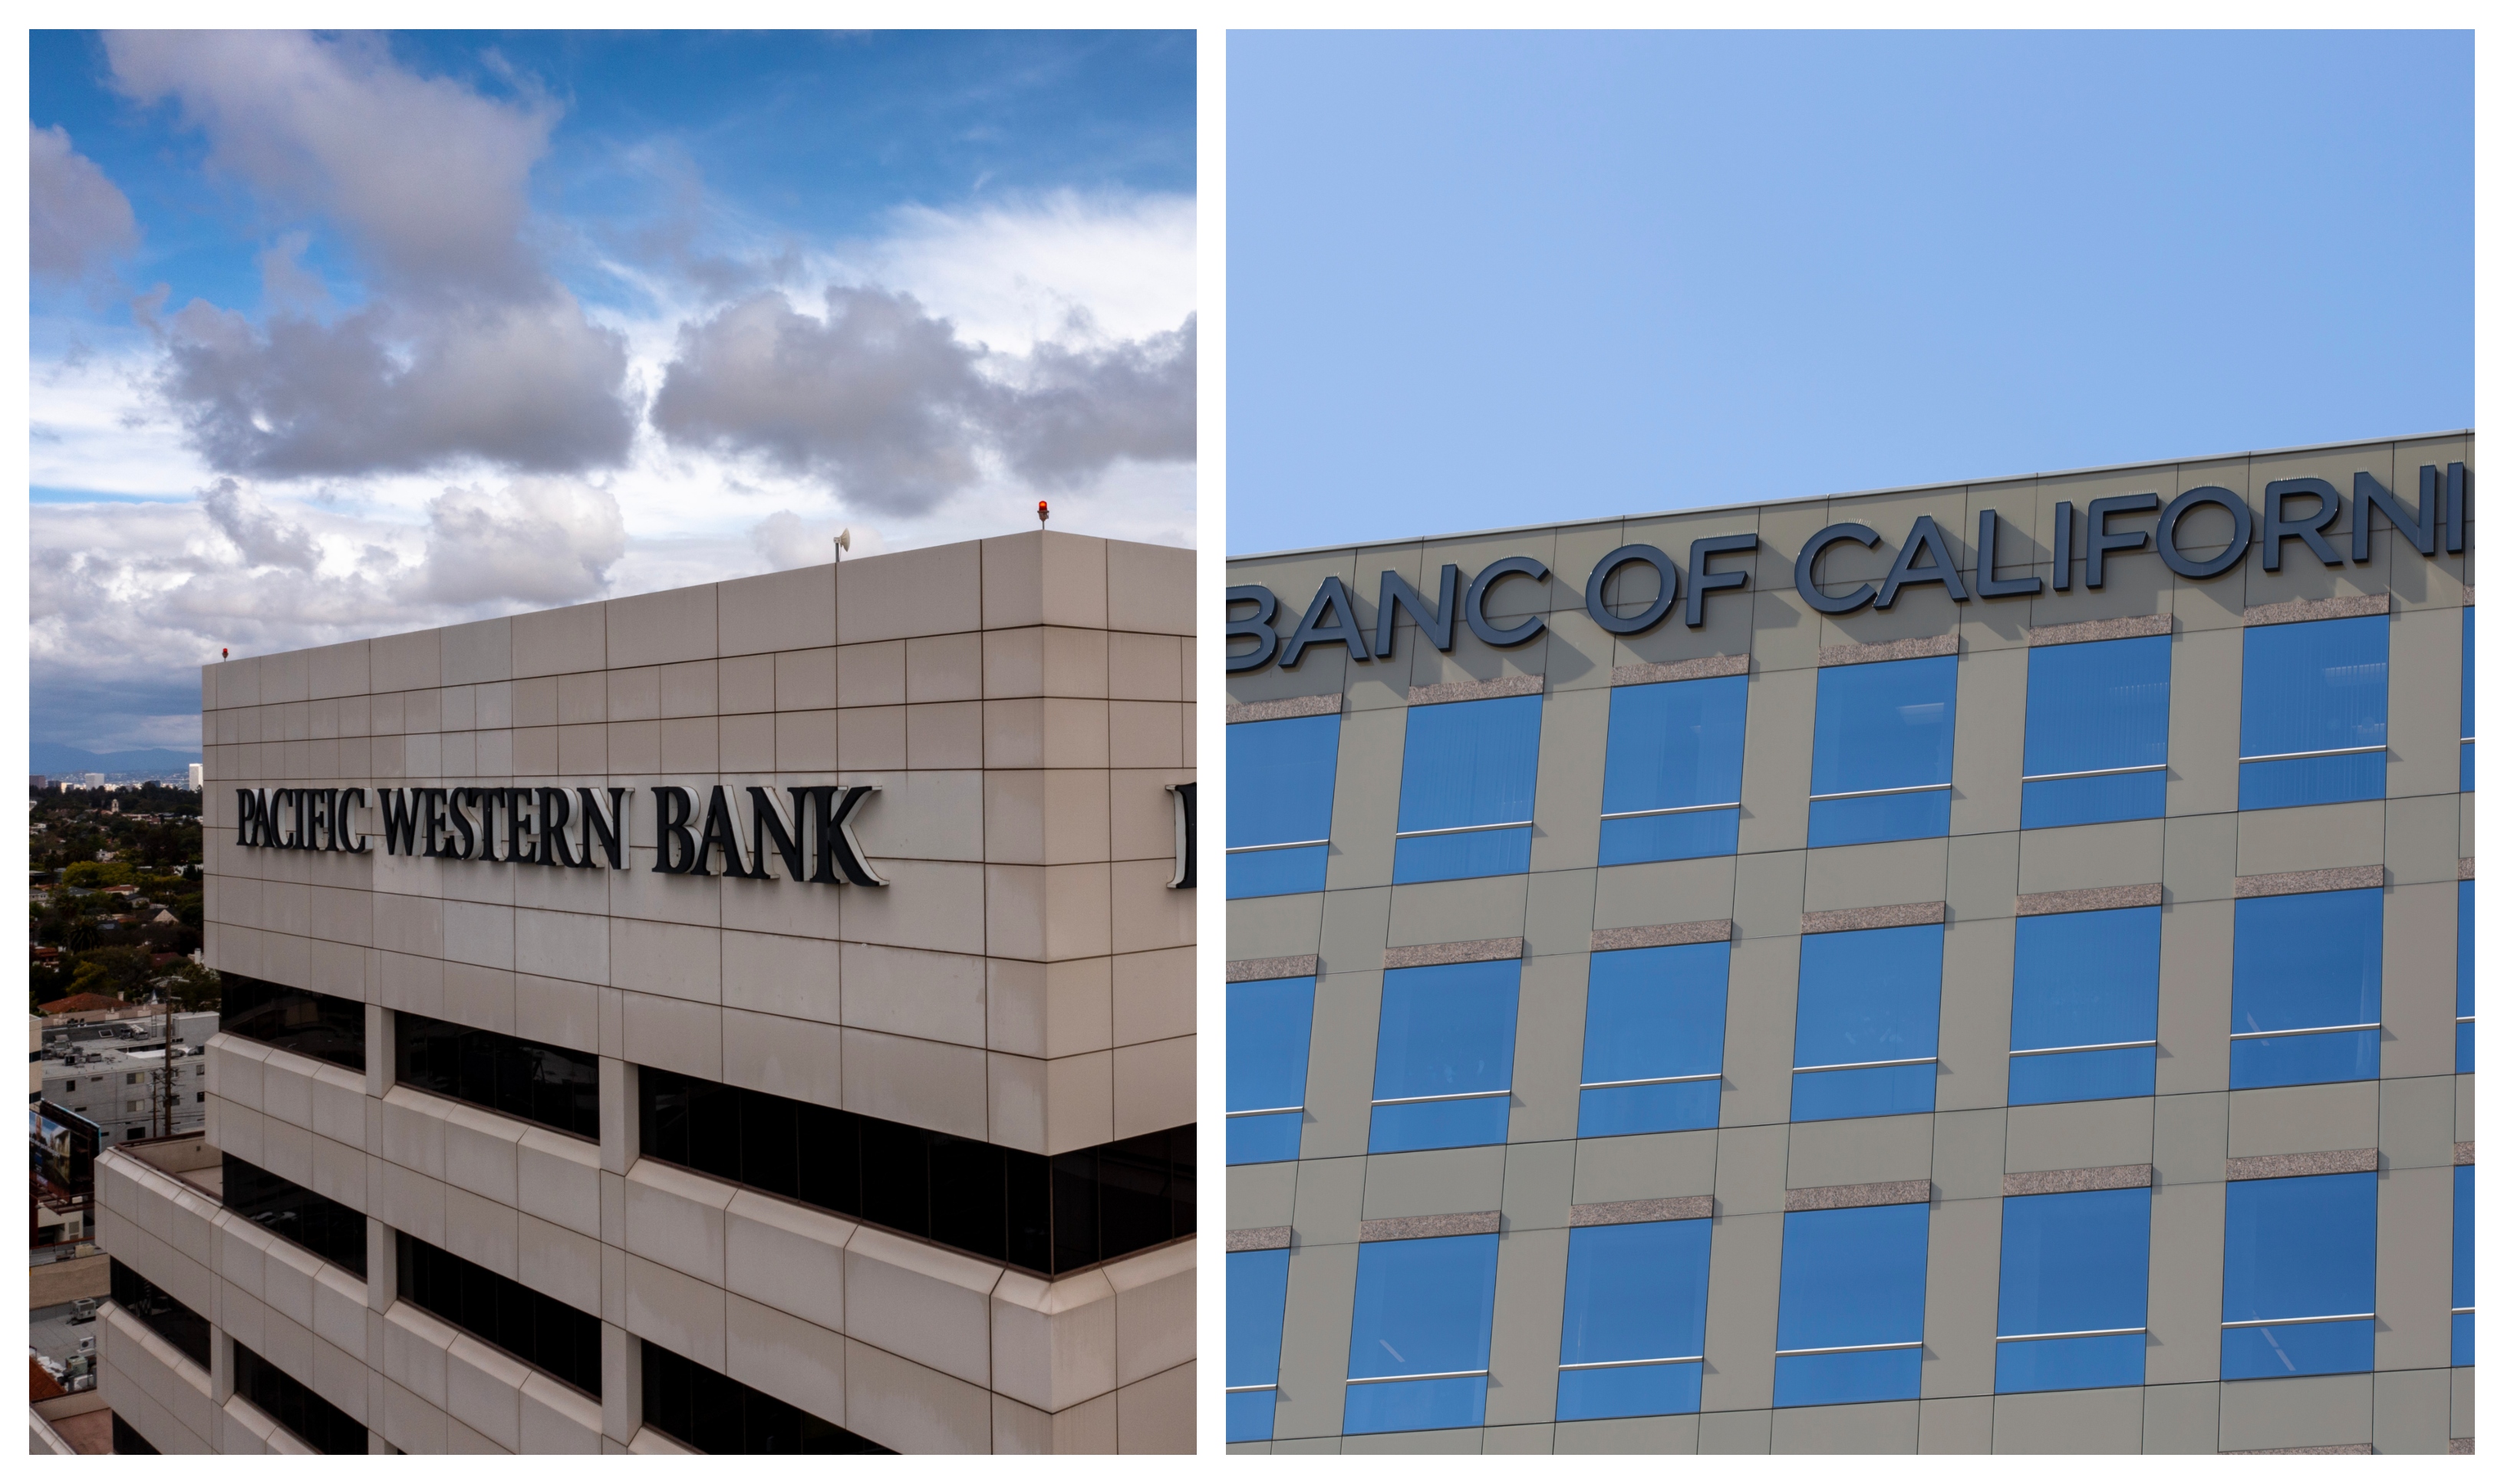 两贷款机构合并 加州银行将增至70分行